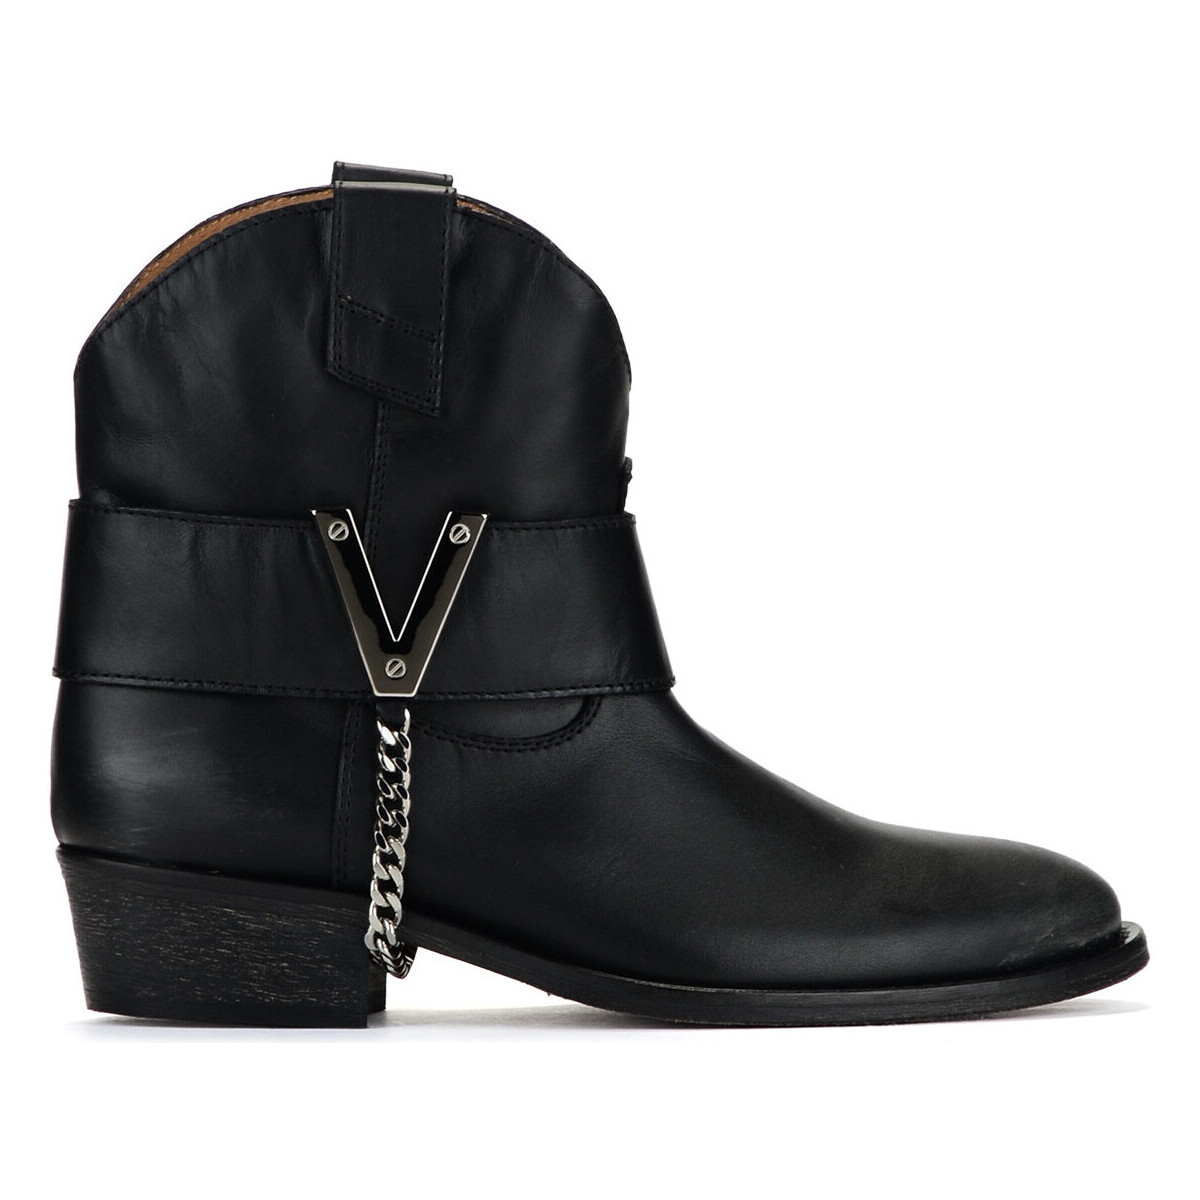 Chaussures Femme Low boots Via Roma 15 Low Texan  noir Autres